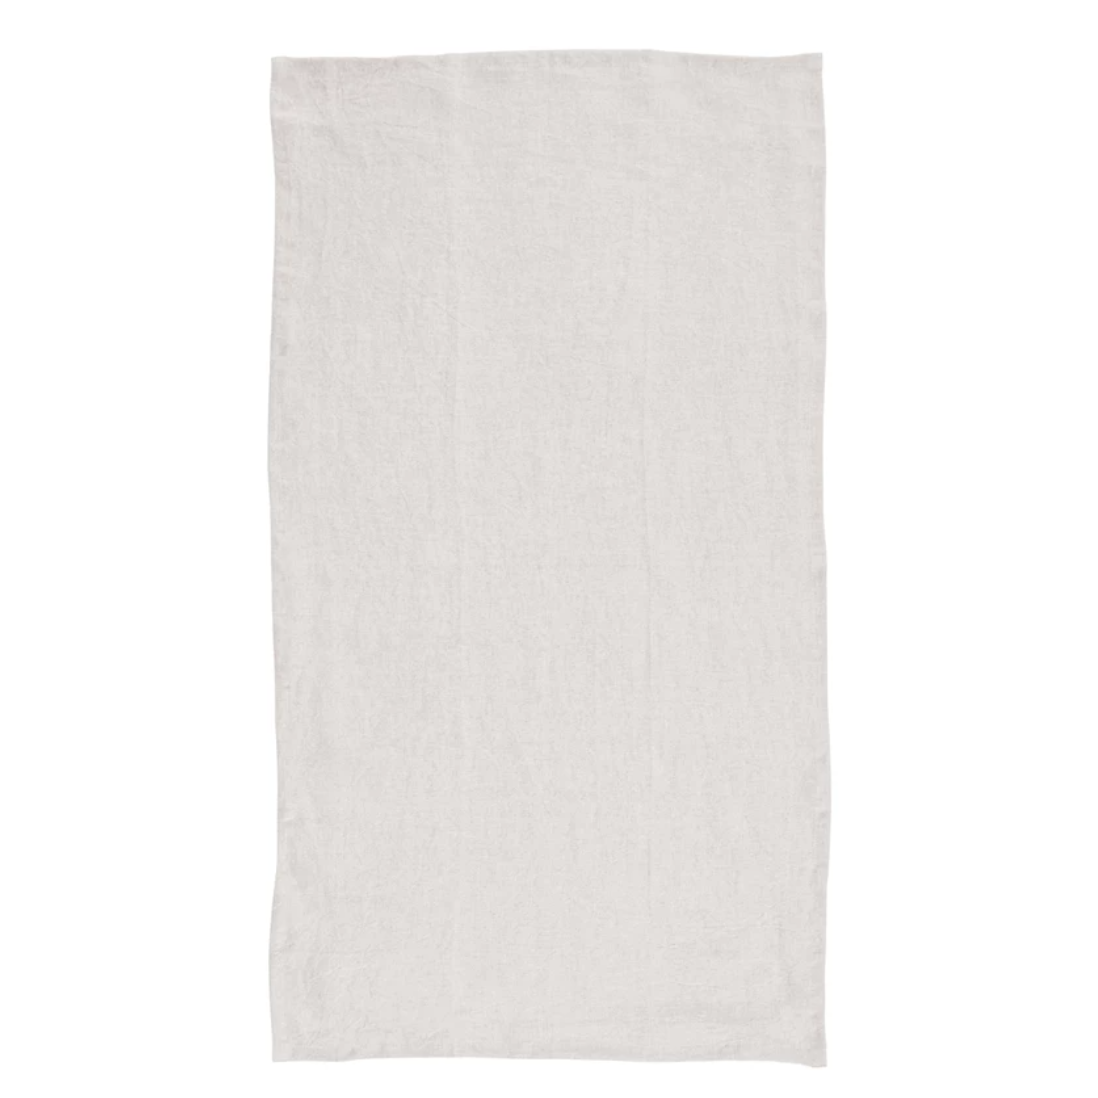 White Stonewashed Linen Tea Towel